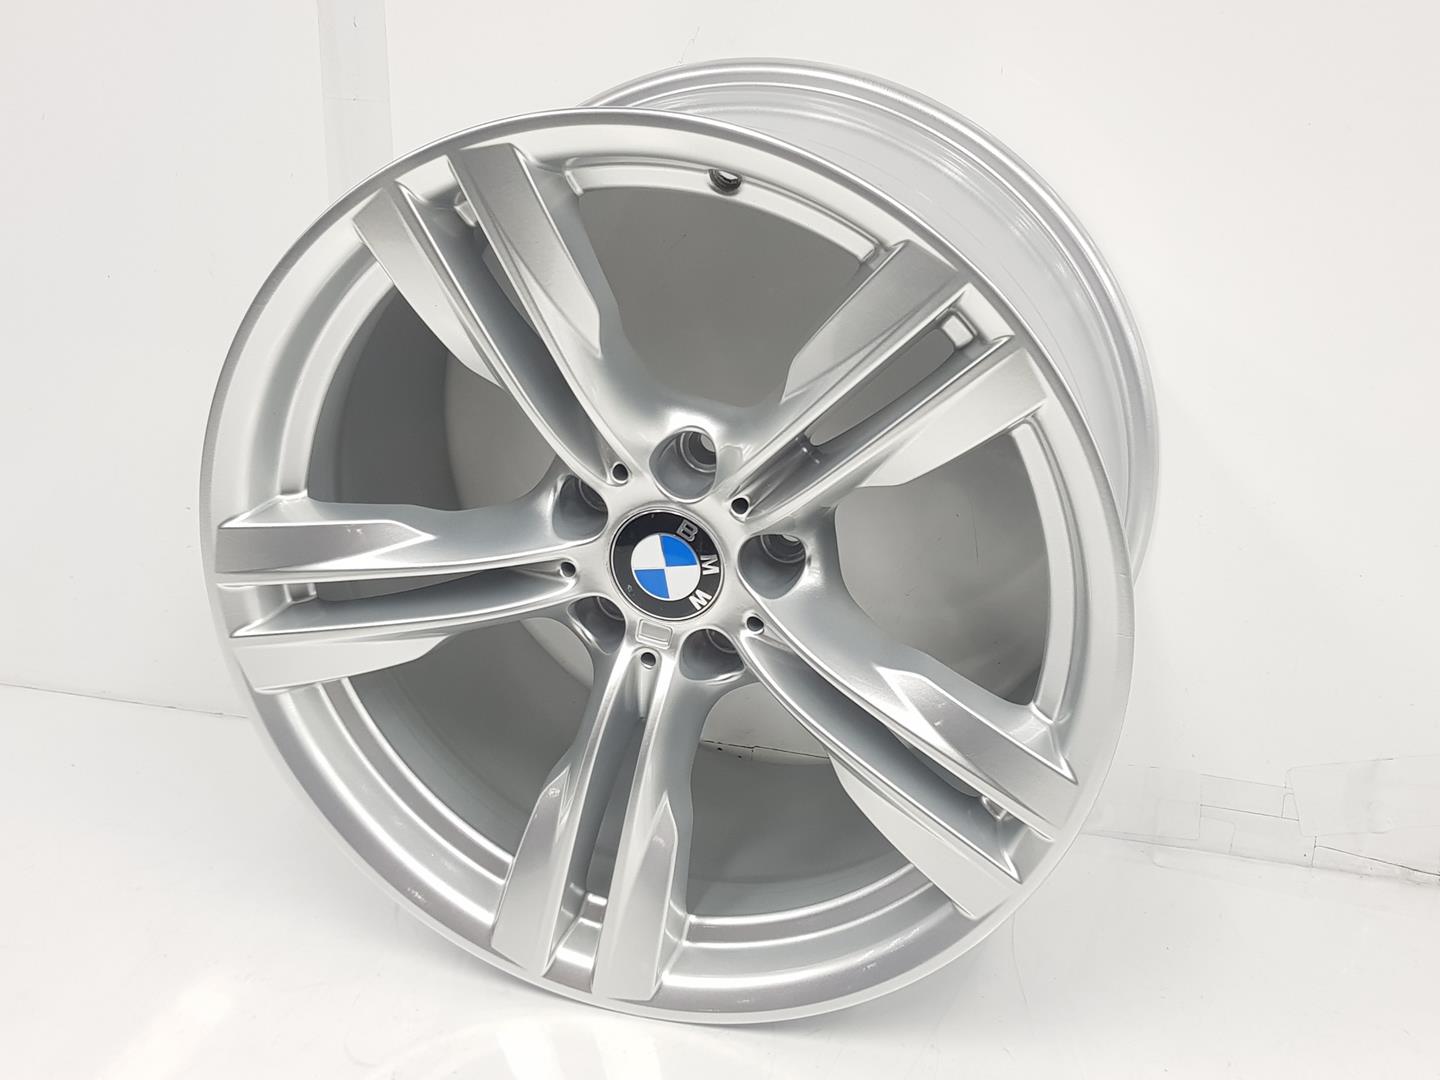 BMW X5 F15 (2013-2018) Wheel 36117846787, 10JX19, 19PULGADAS 24238638